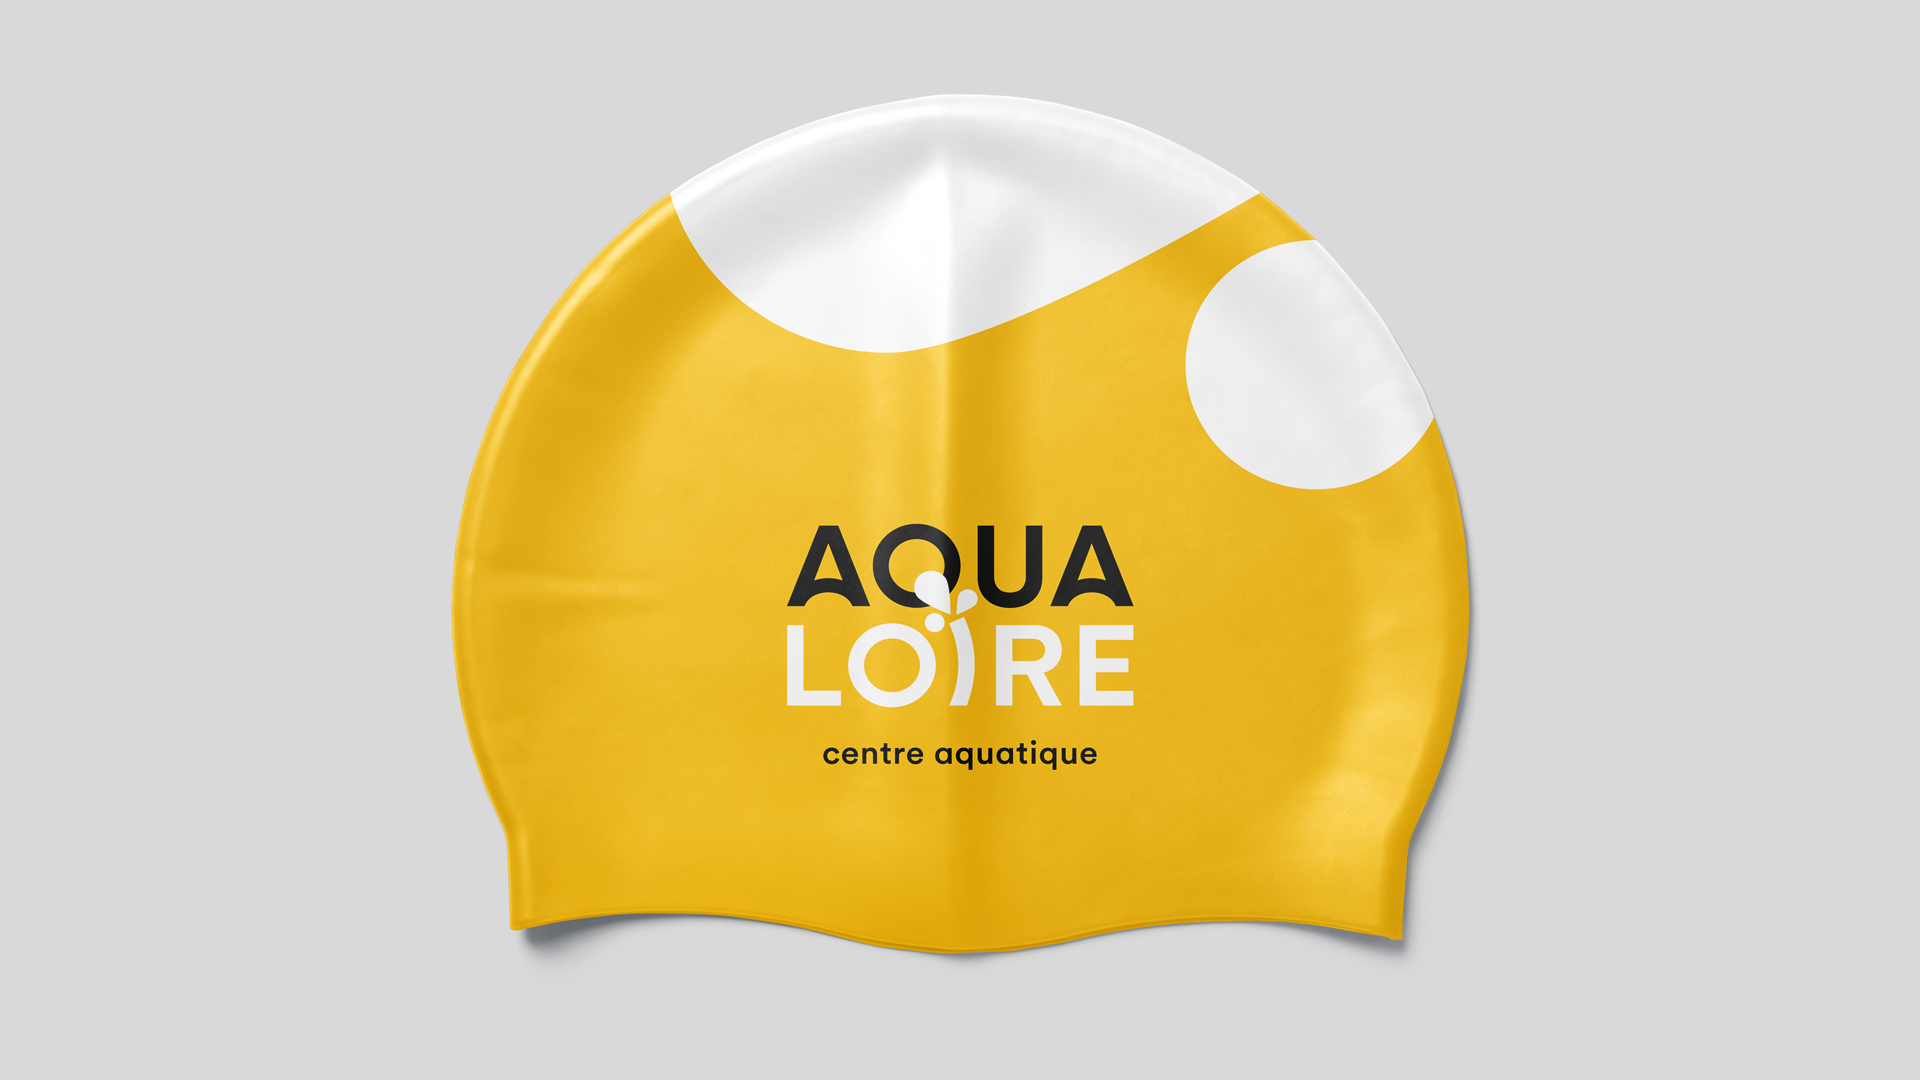 aqualoire mauges sur loire logotype identite visuelle marquage bonnet bain goodies